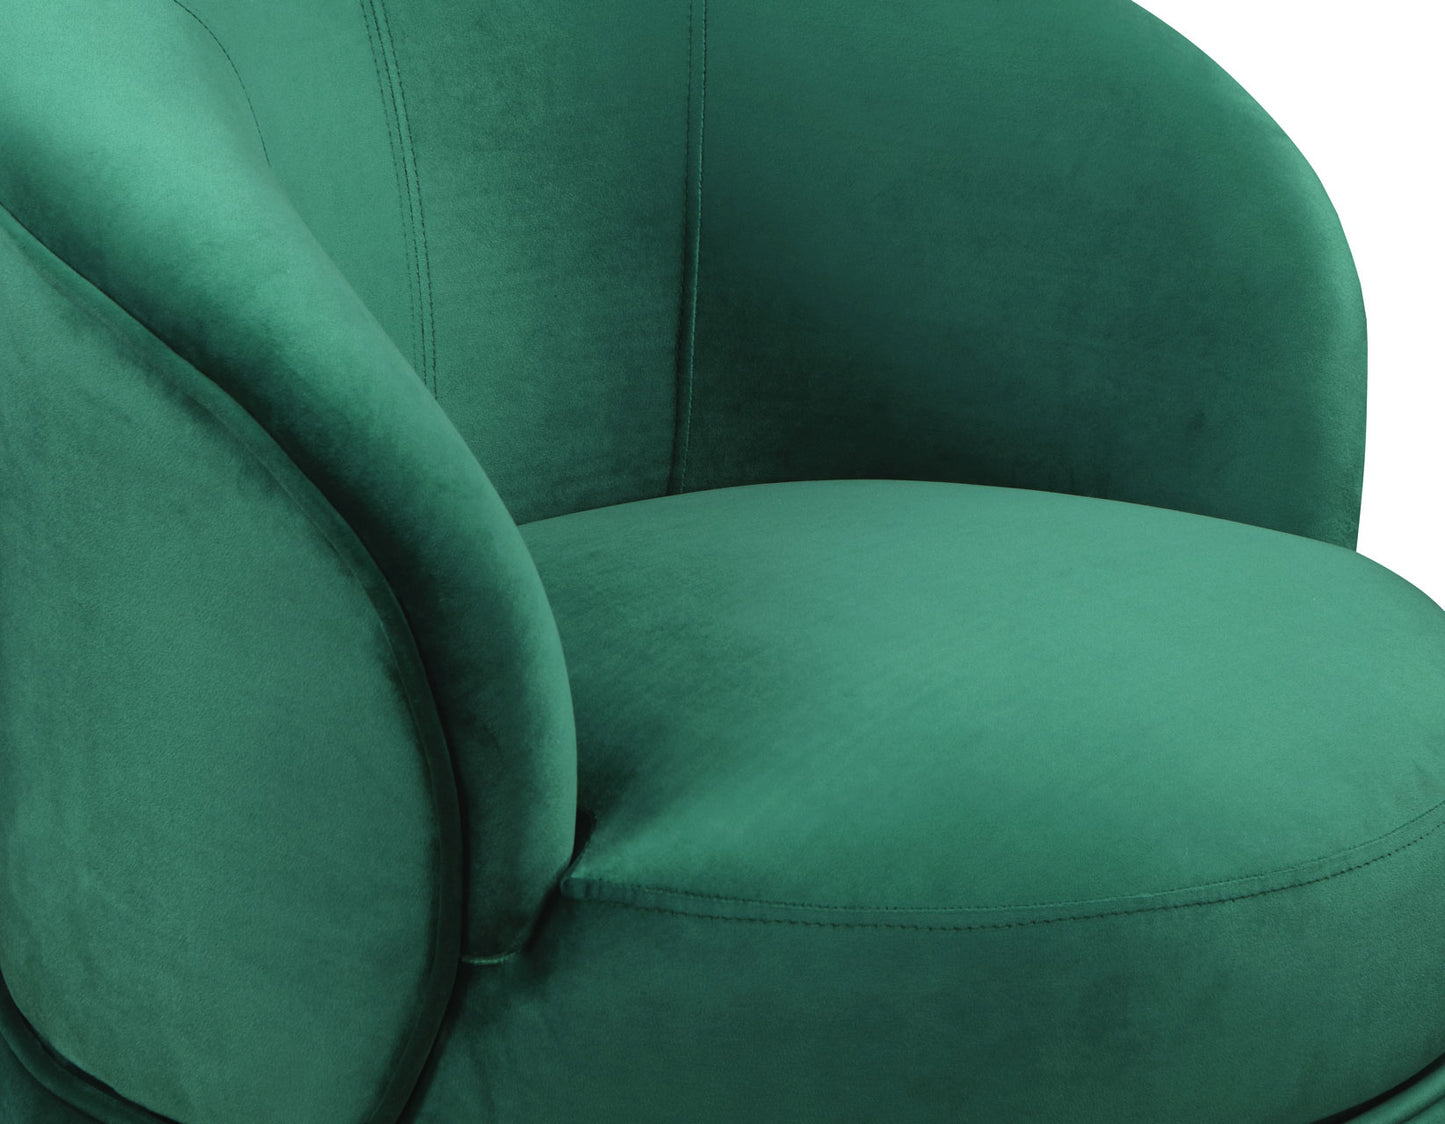 Sophia Swivel Accent Chair, Green Velvet